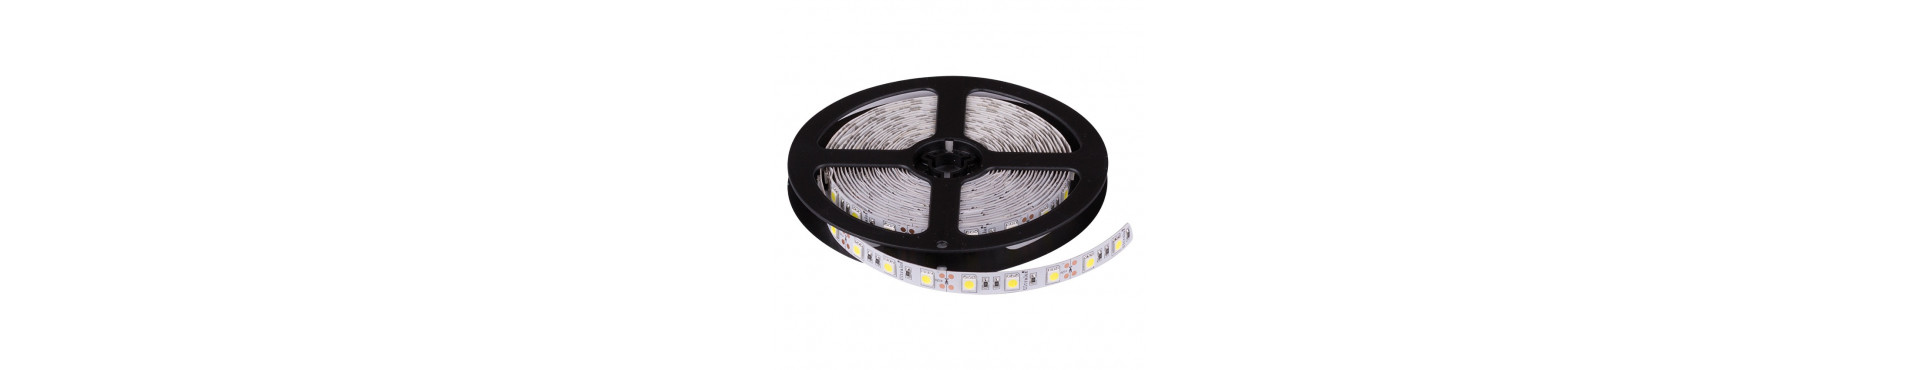 LED-bånd 12V - Ikke vandtæt - Køb dem online her 